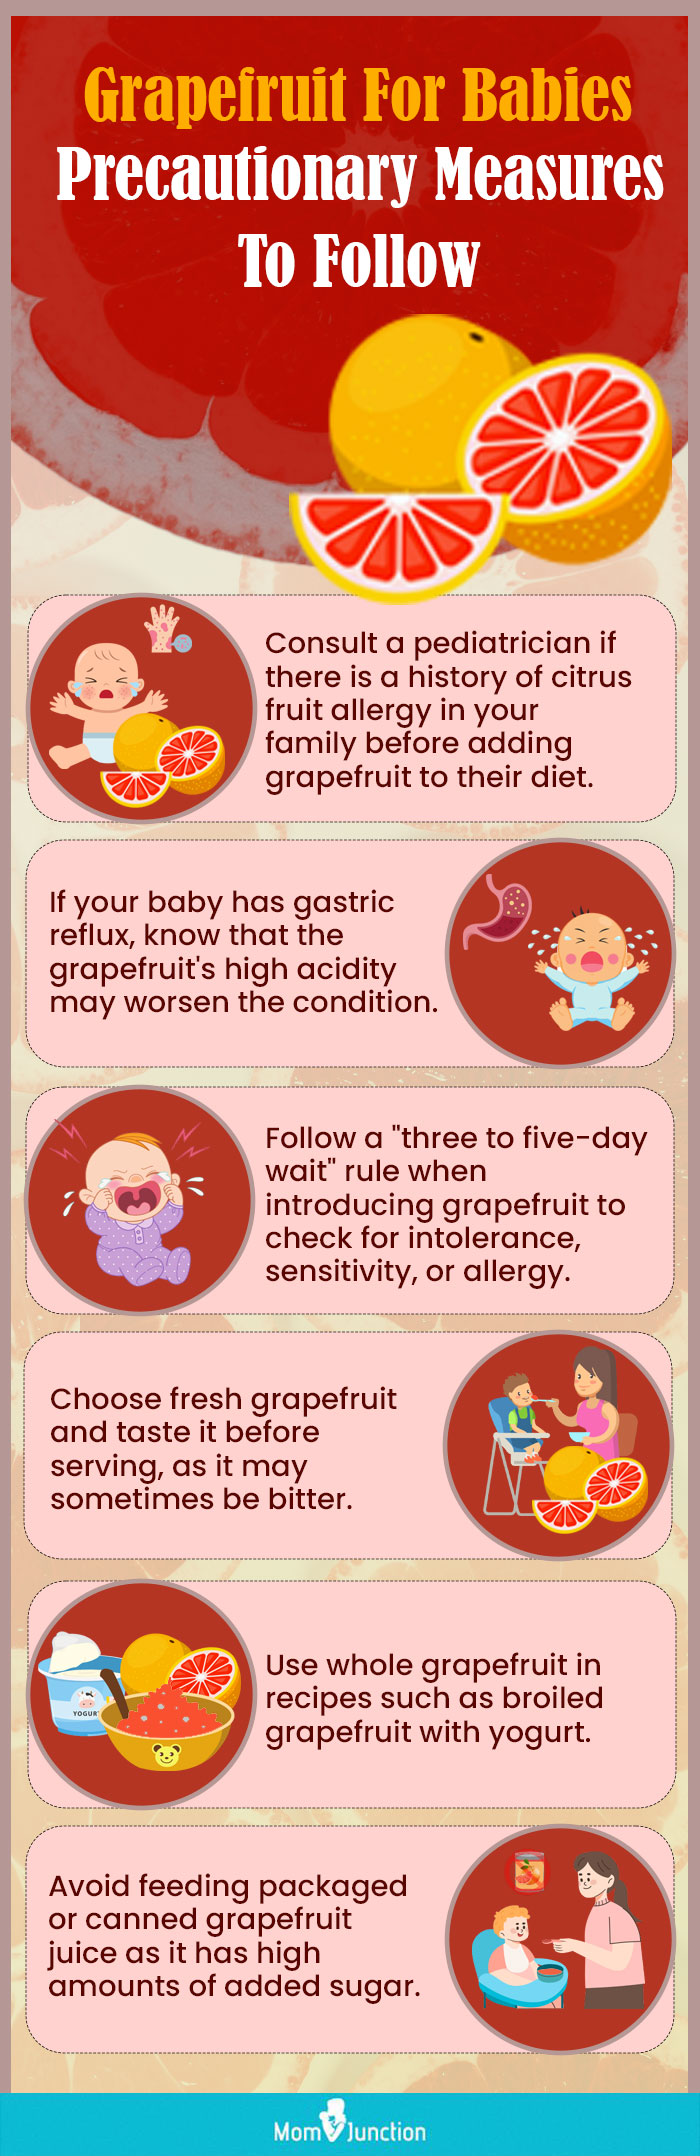 grapefruit for babies precautionary measures to follow (infographic)